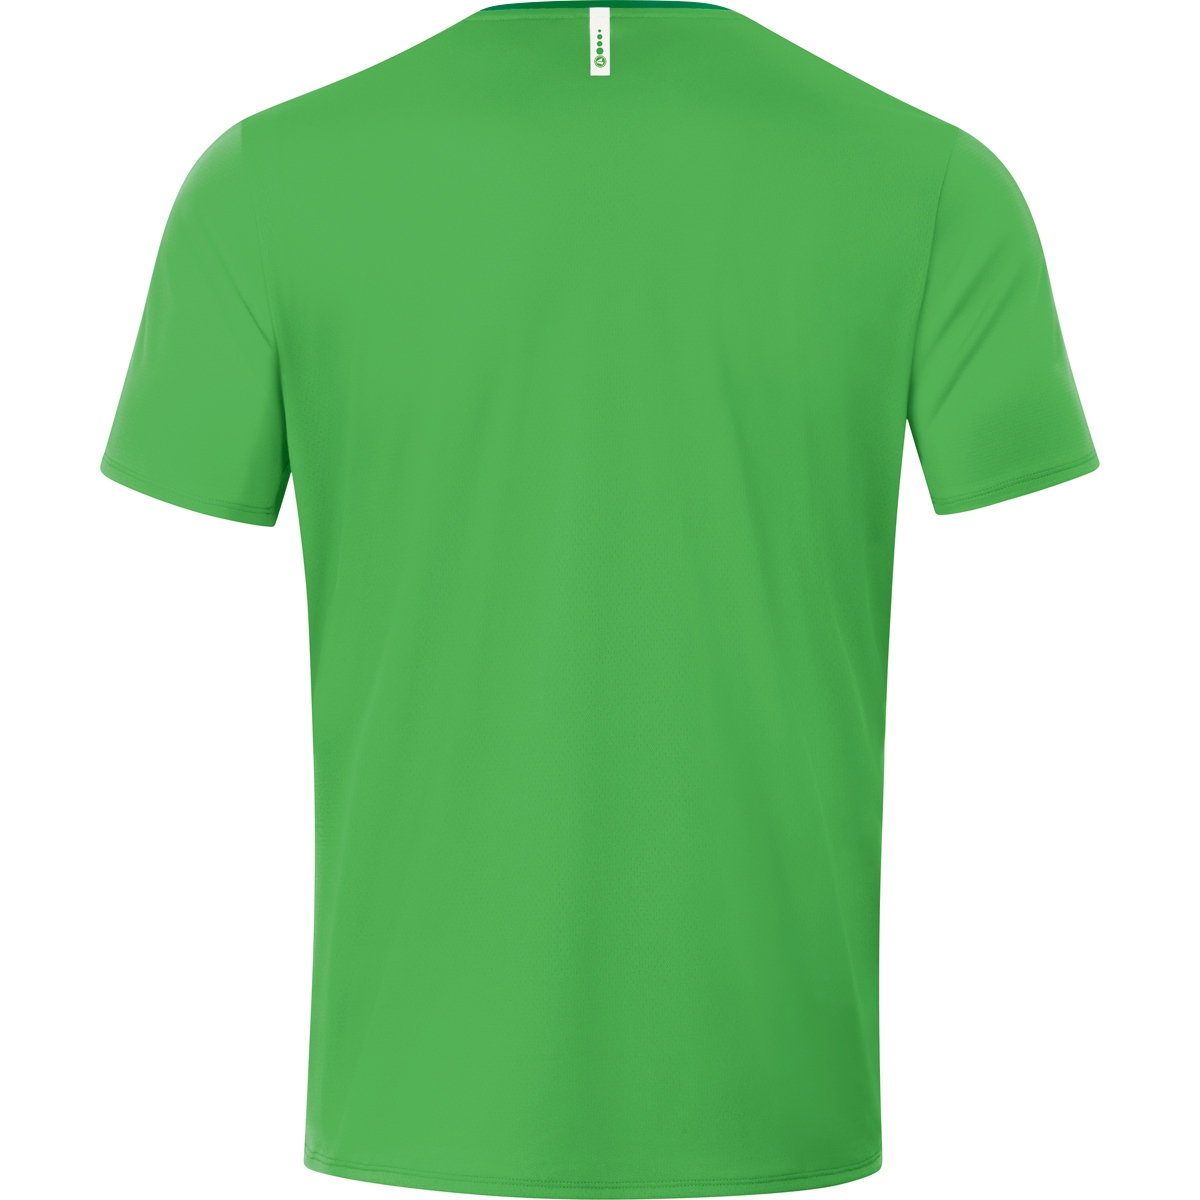 JAKO T-Shirt 6120 Gr. Champ soft 4XL, green/sportgrün, Herren, 2.0